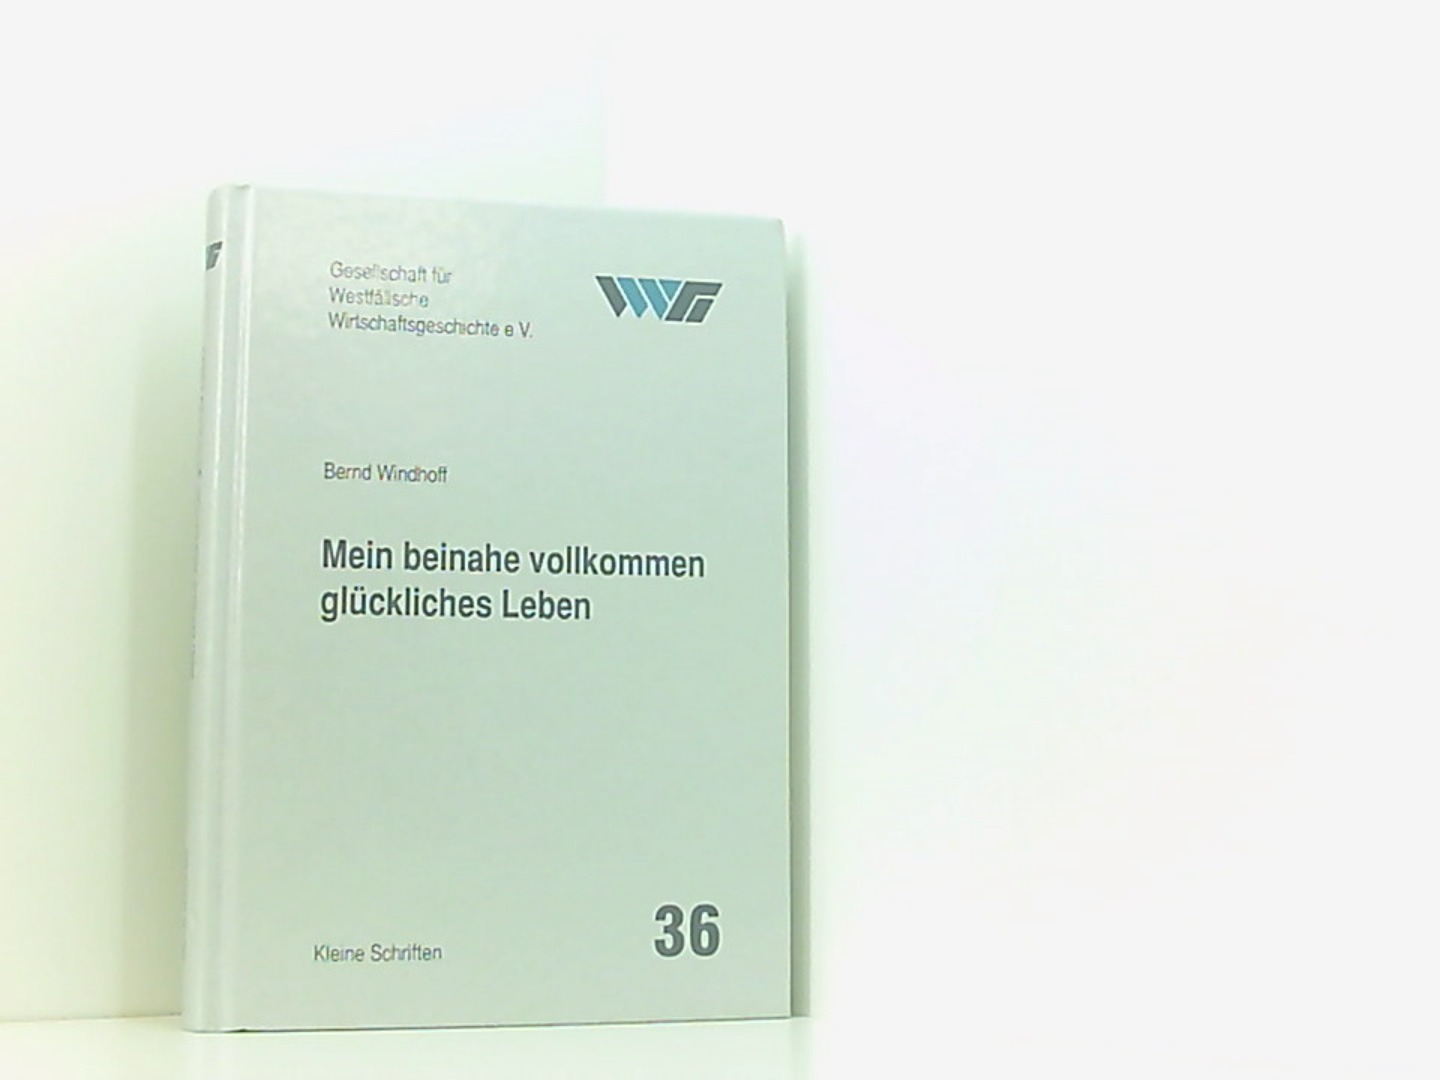 Mein beinahe vollkommen glückliches Leben (Kleine Schriften der Gesellschaft für Westfälische Wirtschaftsgeschichte) - Ellerbrock, Karl-Peter, Bernd Windhoff Burkhard Spinnen u. a.